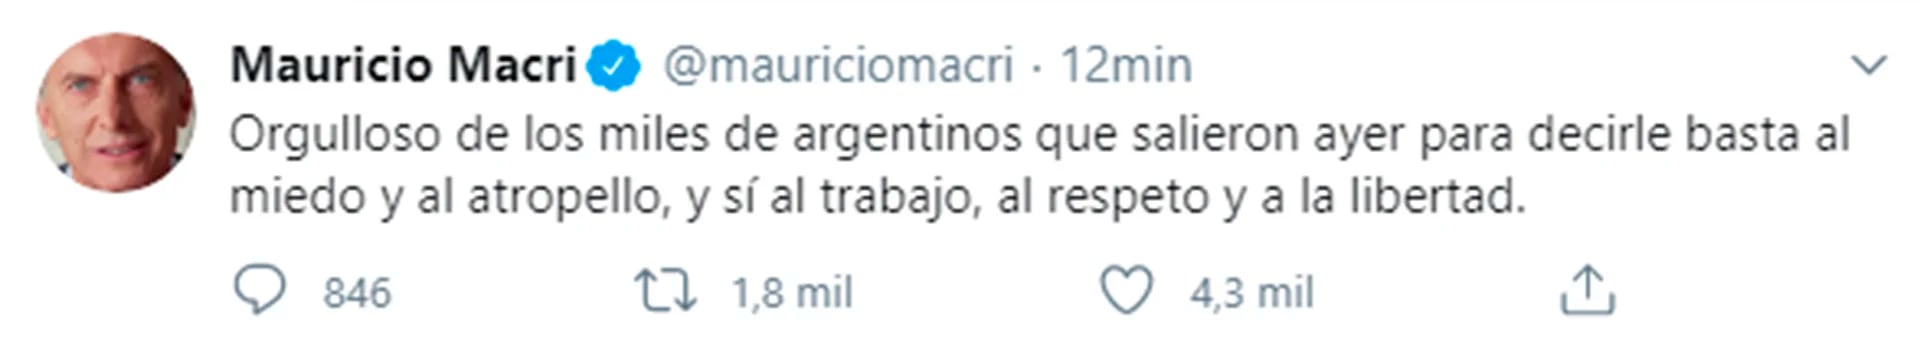 Mauricio Macri respaldó la masiva movilización y banderazo contra Alberto Fernández que ocurrió el 17 de agosto